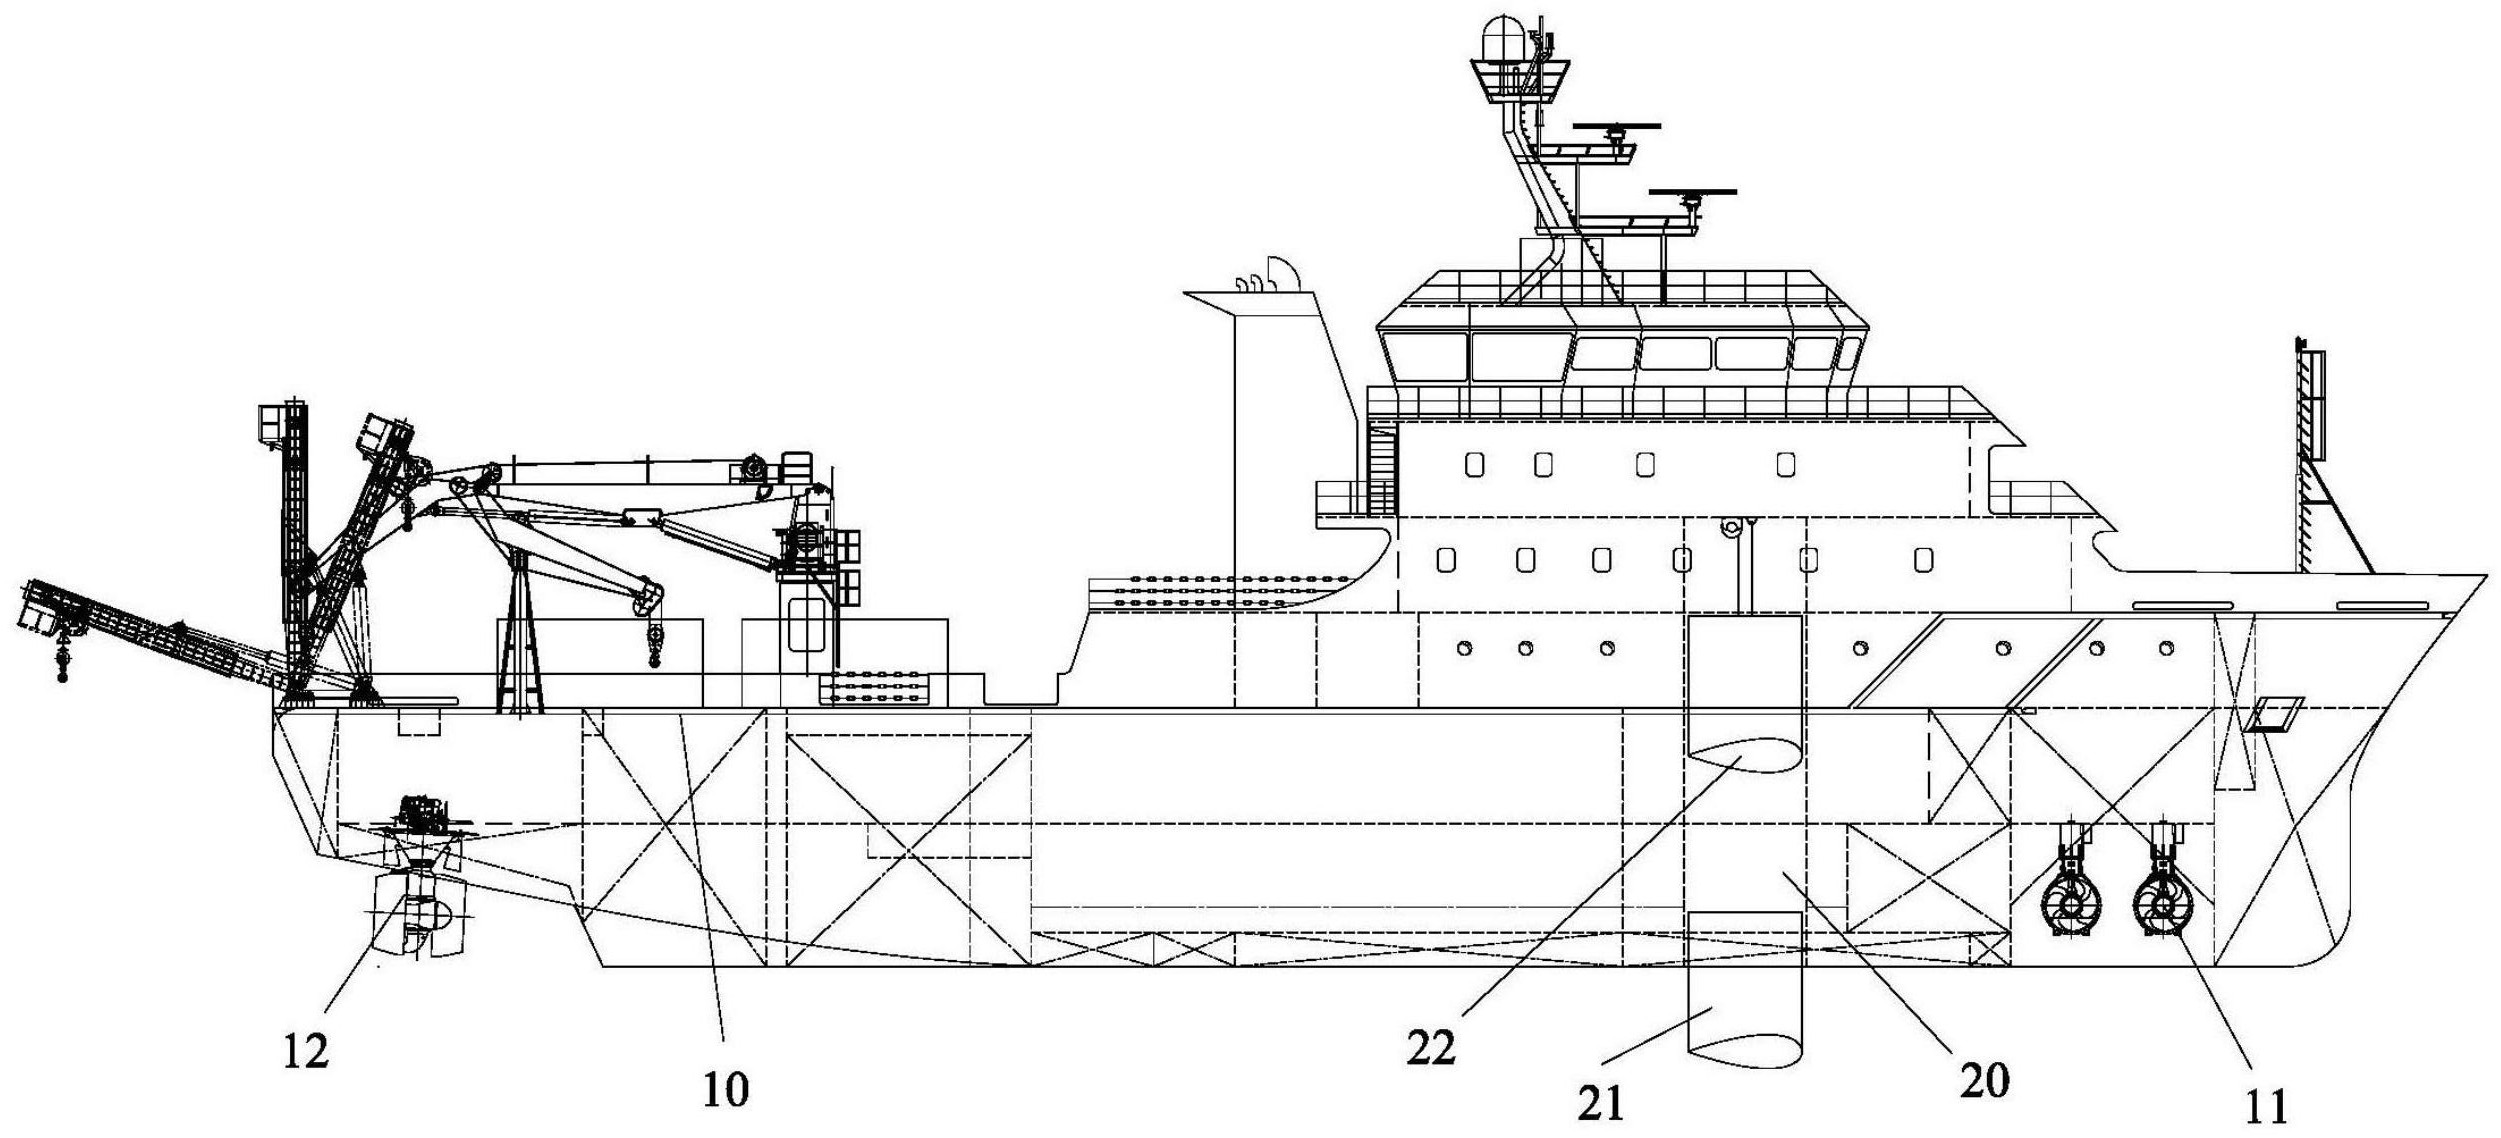 和电缆巡检维护作业的专用测量船,其具有主甲板;主甲板固设有拖曳装置